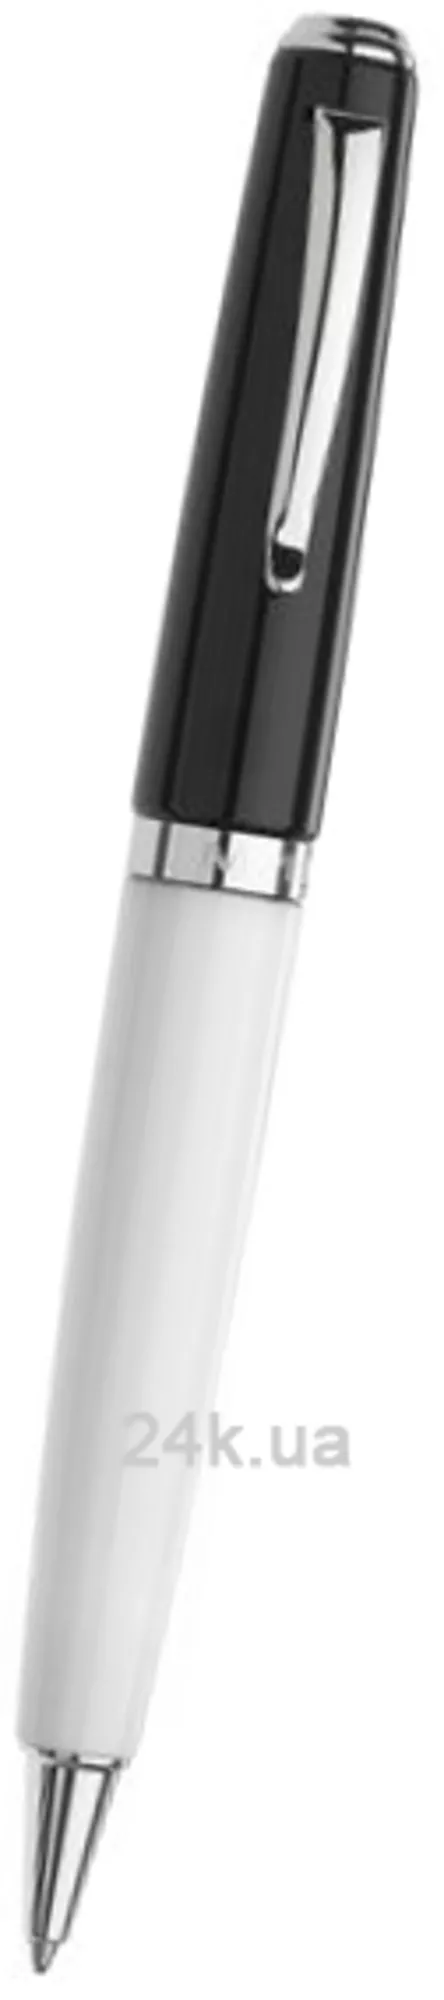 Ручка Marlen M10.164 BP White-Black